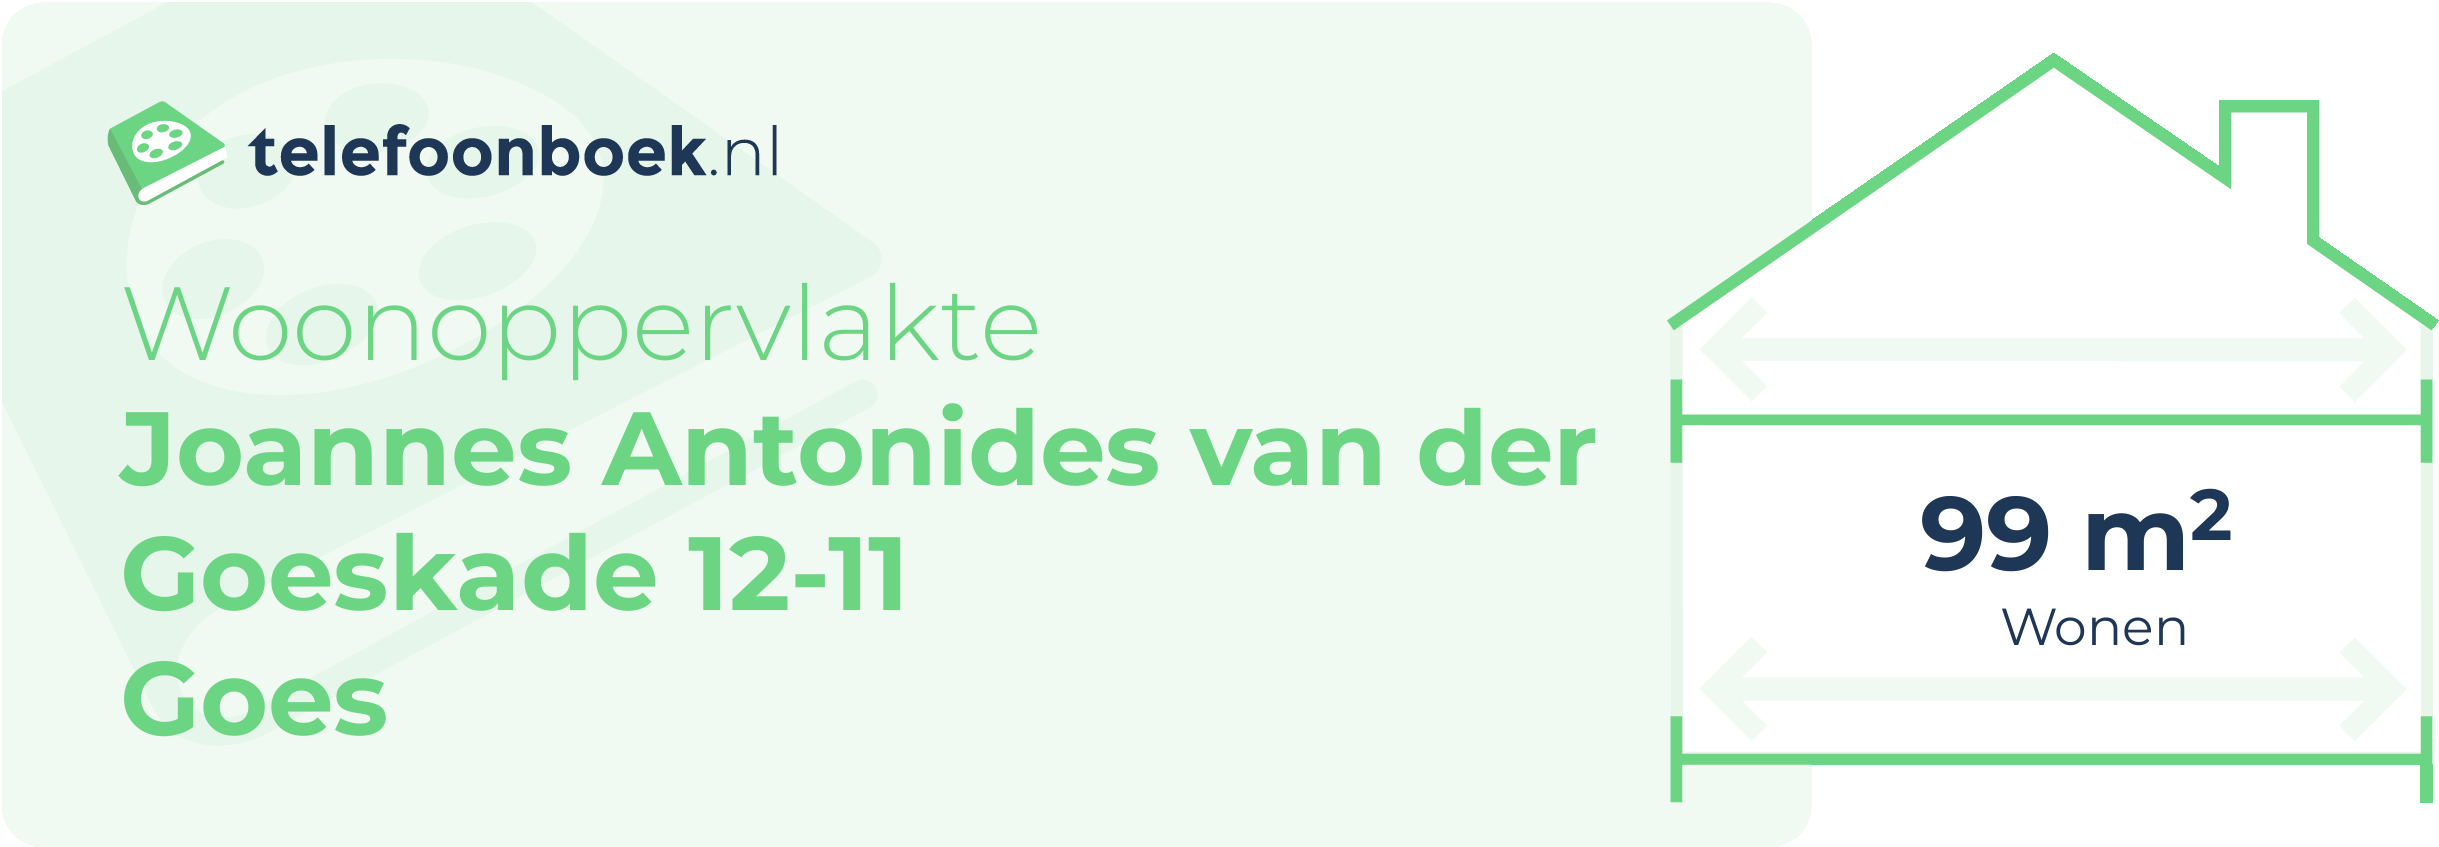 Woonoppervlakte Joannes Antonides Van Der Goeskade 12-11 Goes